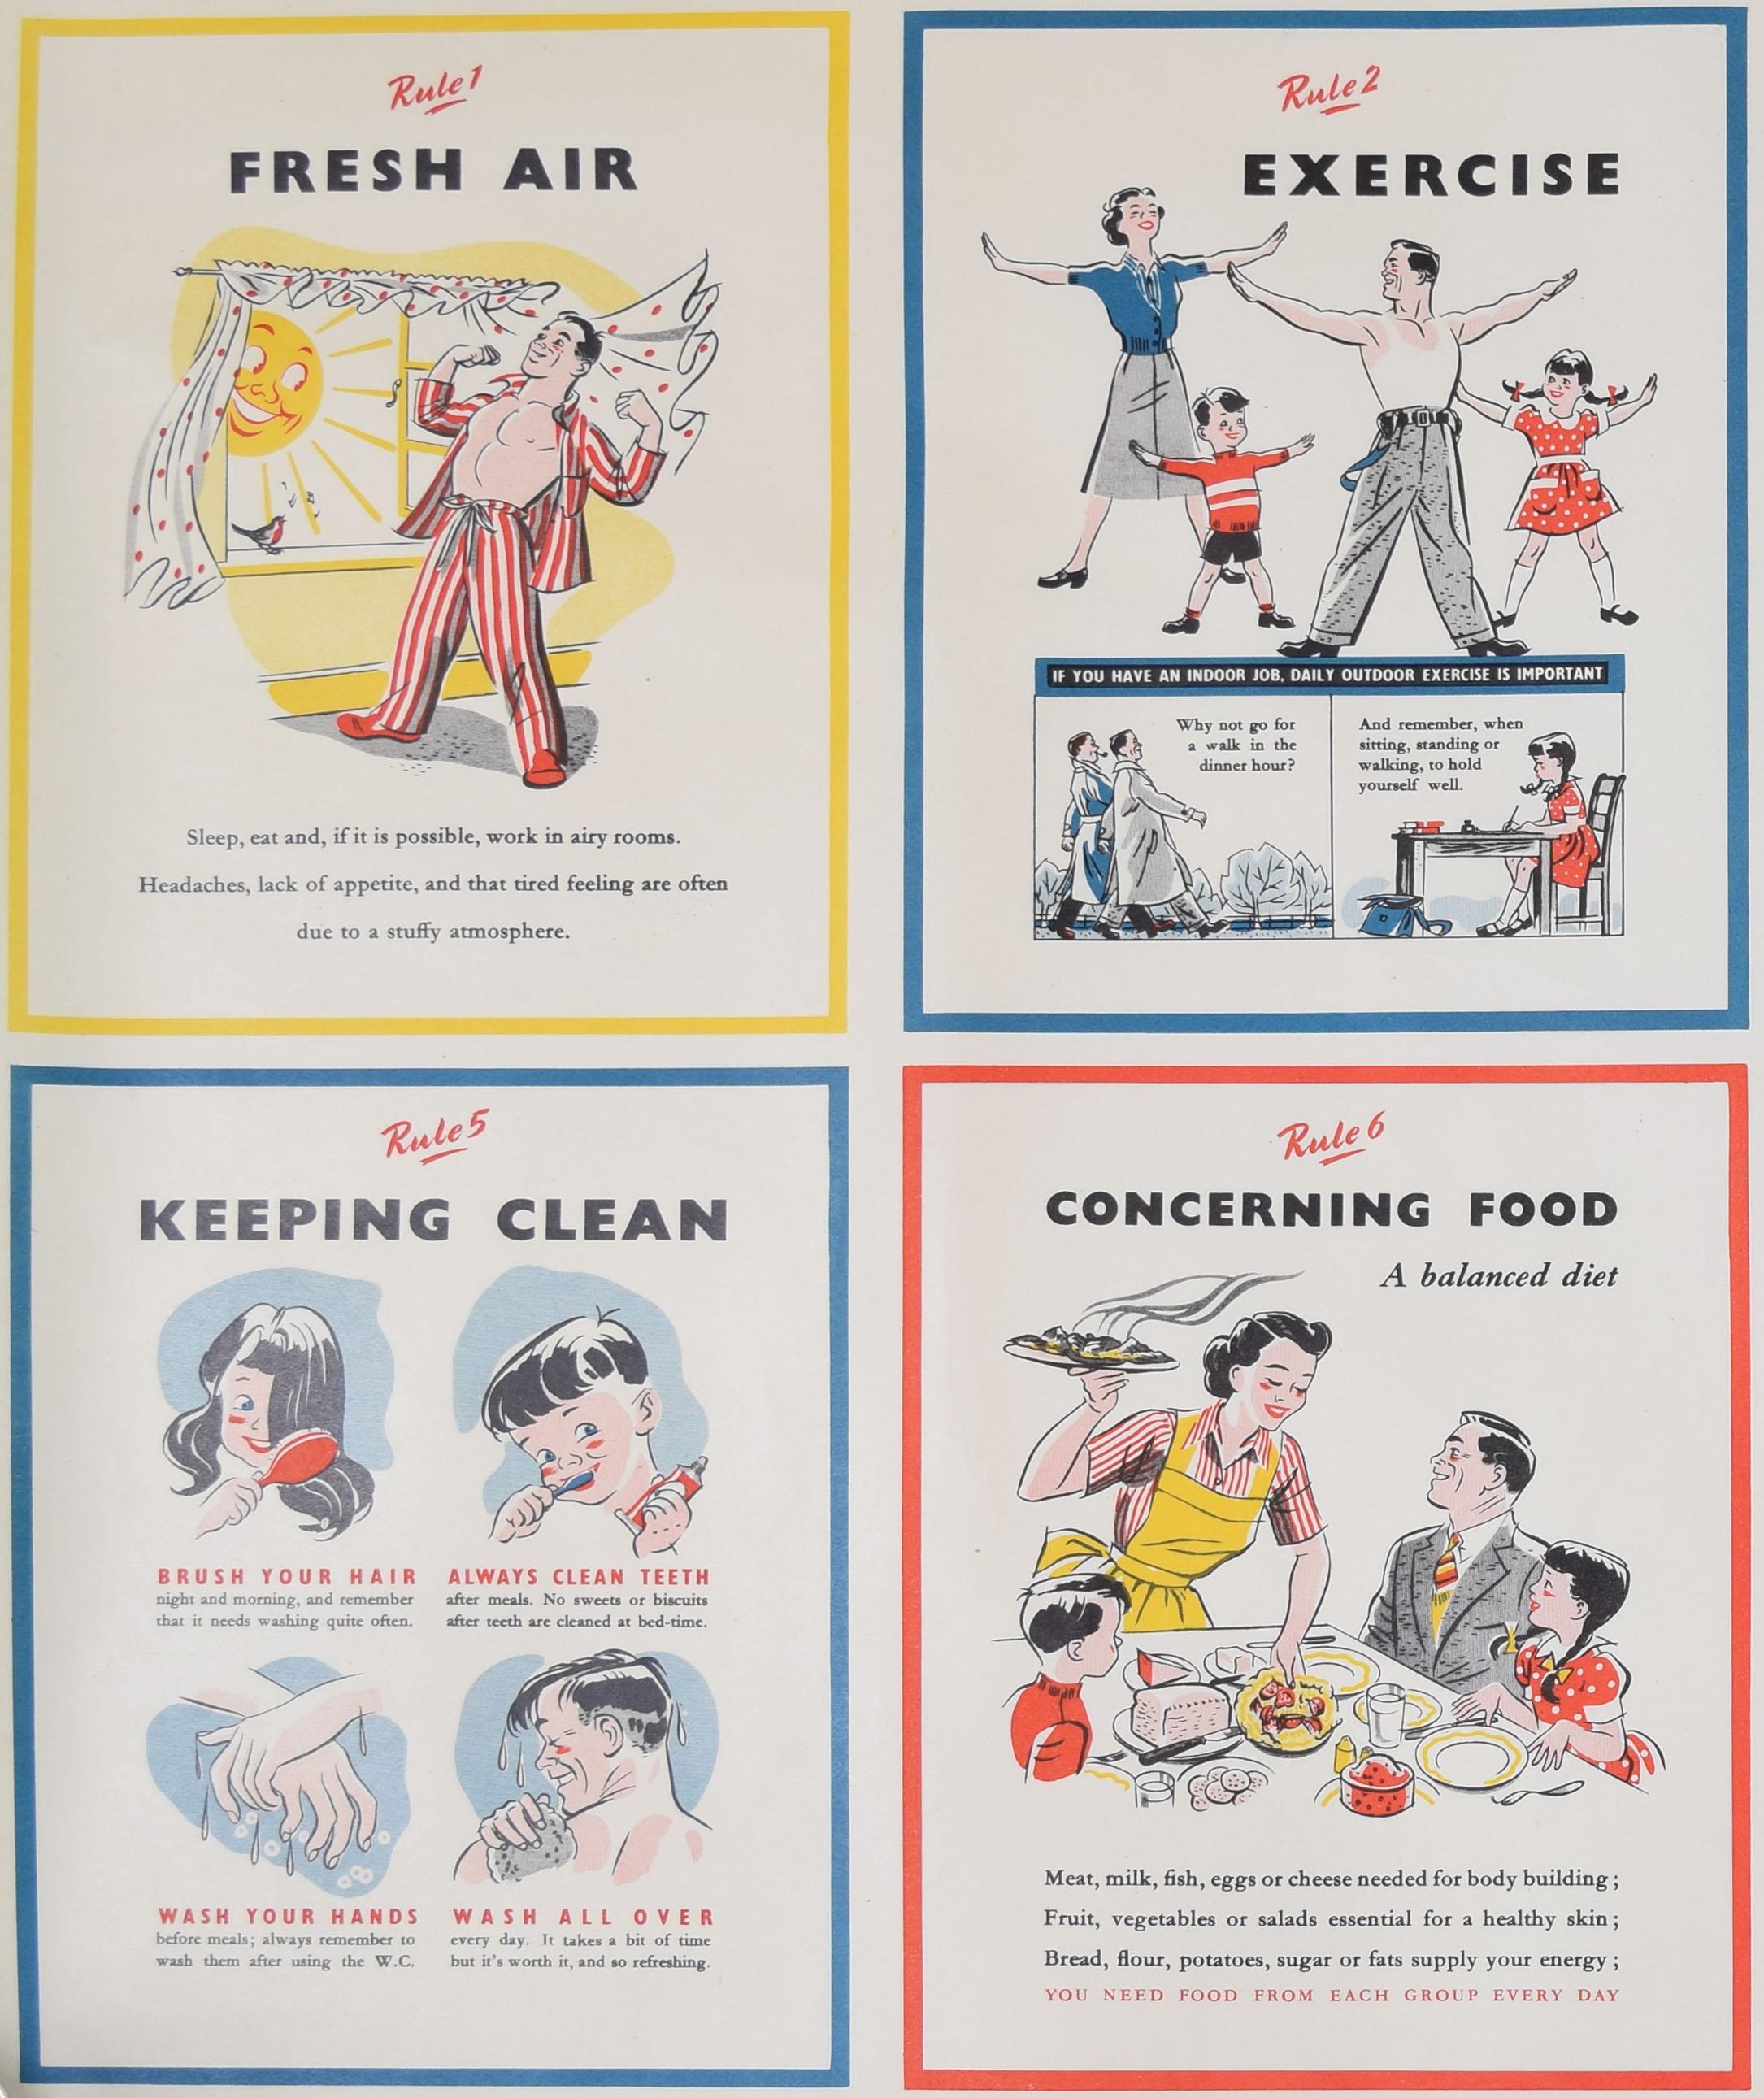 Großbritannien: Propagandaplakat „The Seven Rules of Health“ der britischen Regierung, HMSO, um 1950 (Moderne), Print, von Unknown